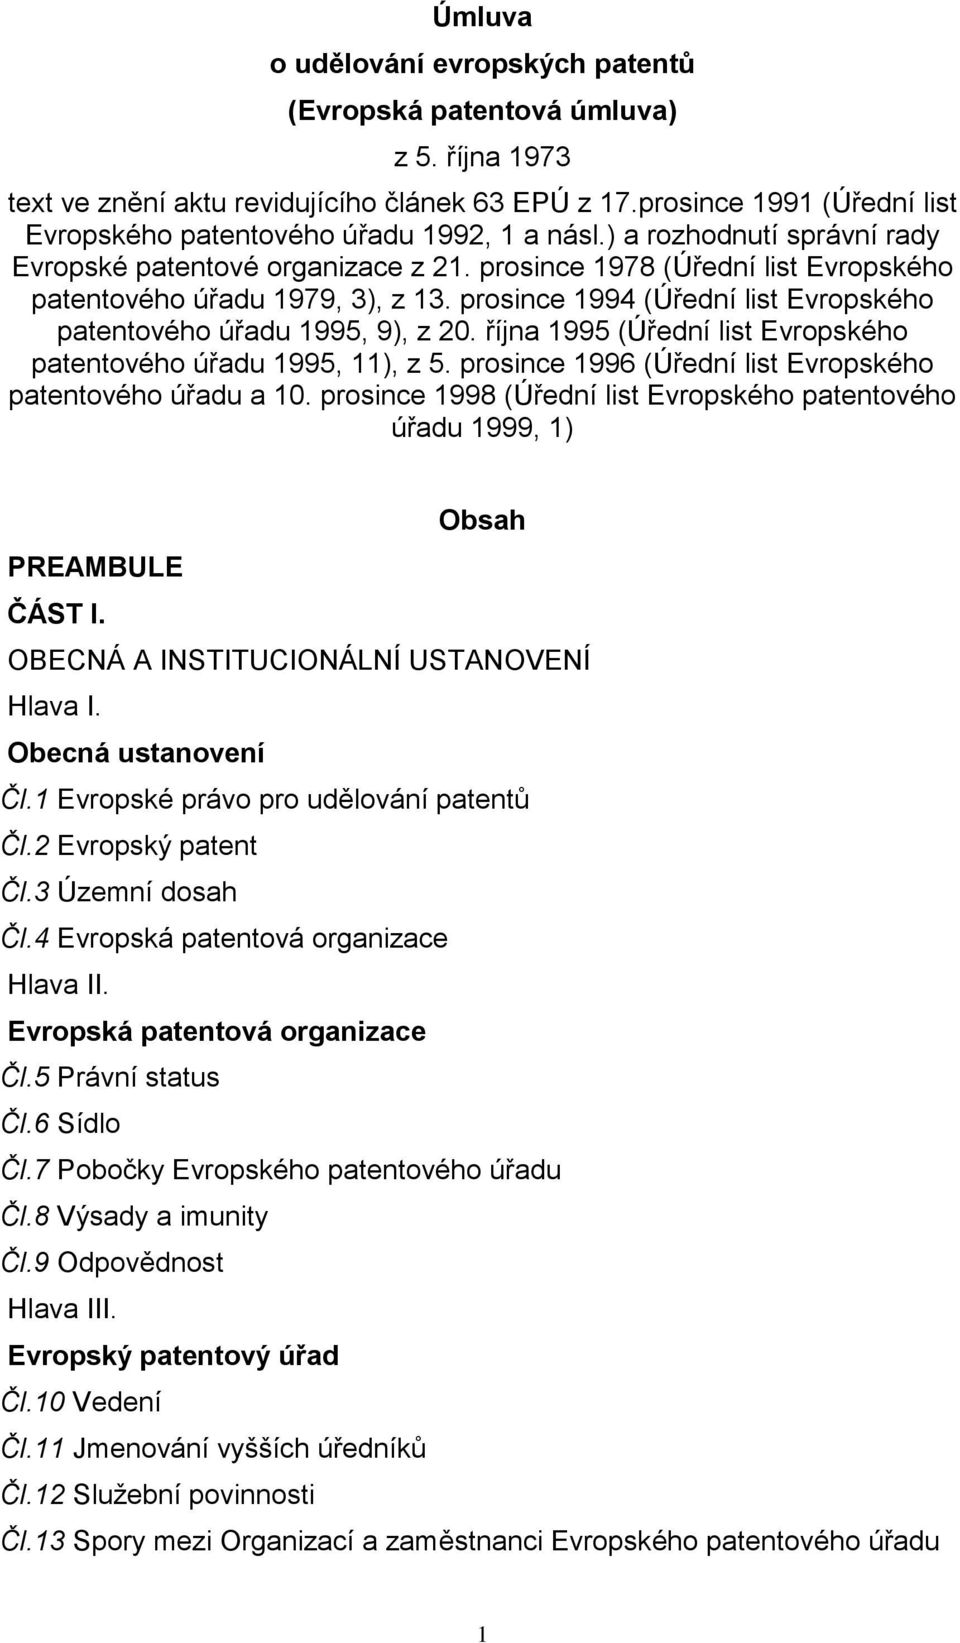 prosince 1978 (Úřední list Evropského patentového úřadu 1979, 3), z 13. prosince 1994 (Úřední list Evropského patentového úřadu 1995, 9), z 20.